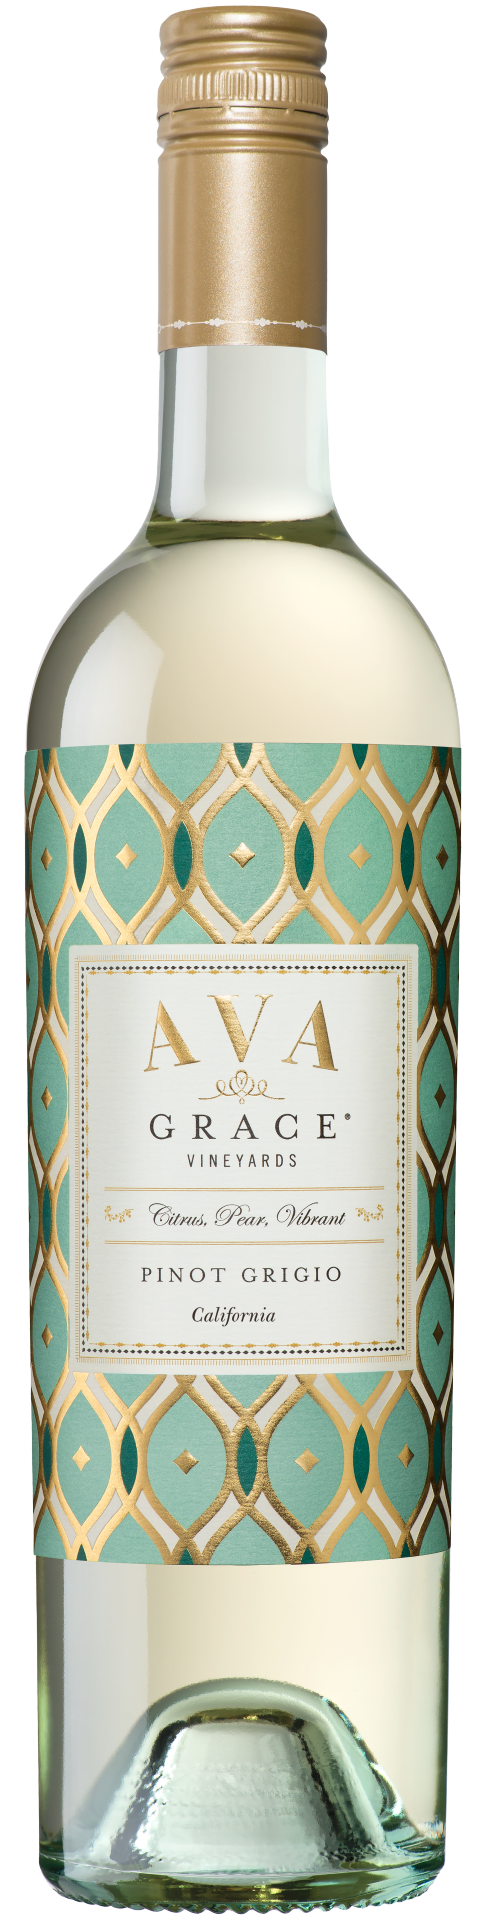 slide 1 of 1, AVA Grace Vineyards Pinot Grigio White Wine, 750 ml